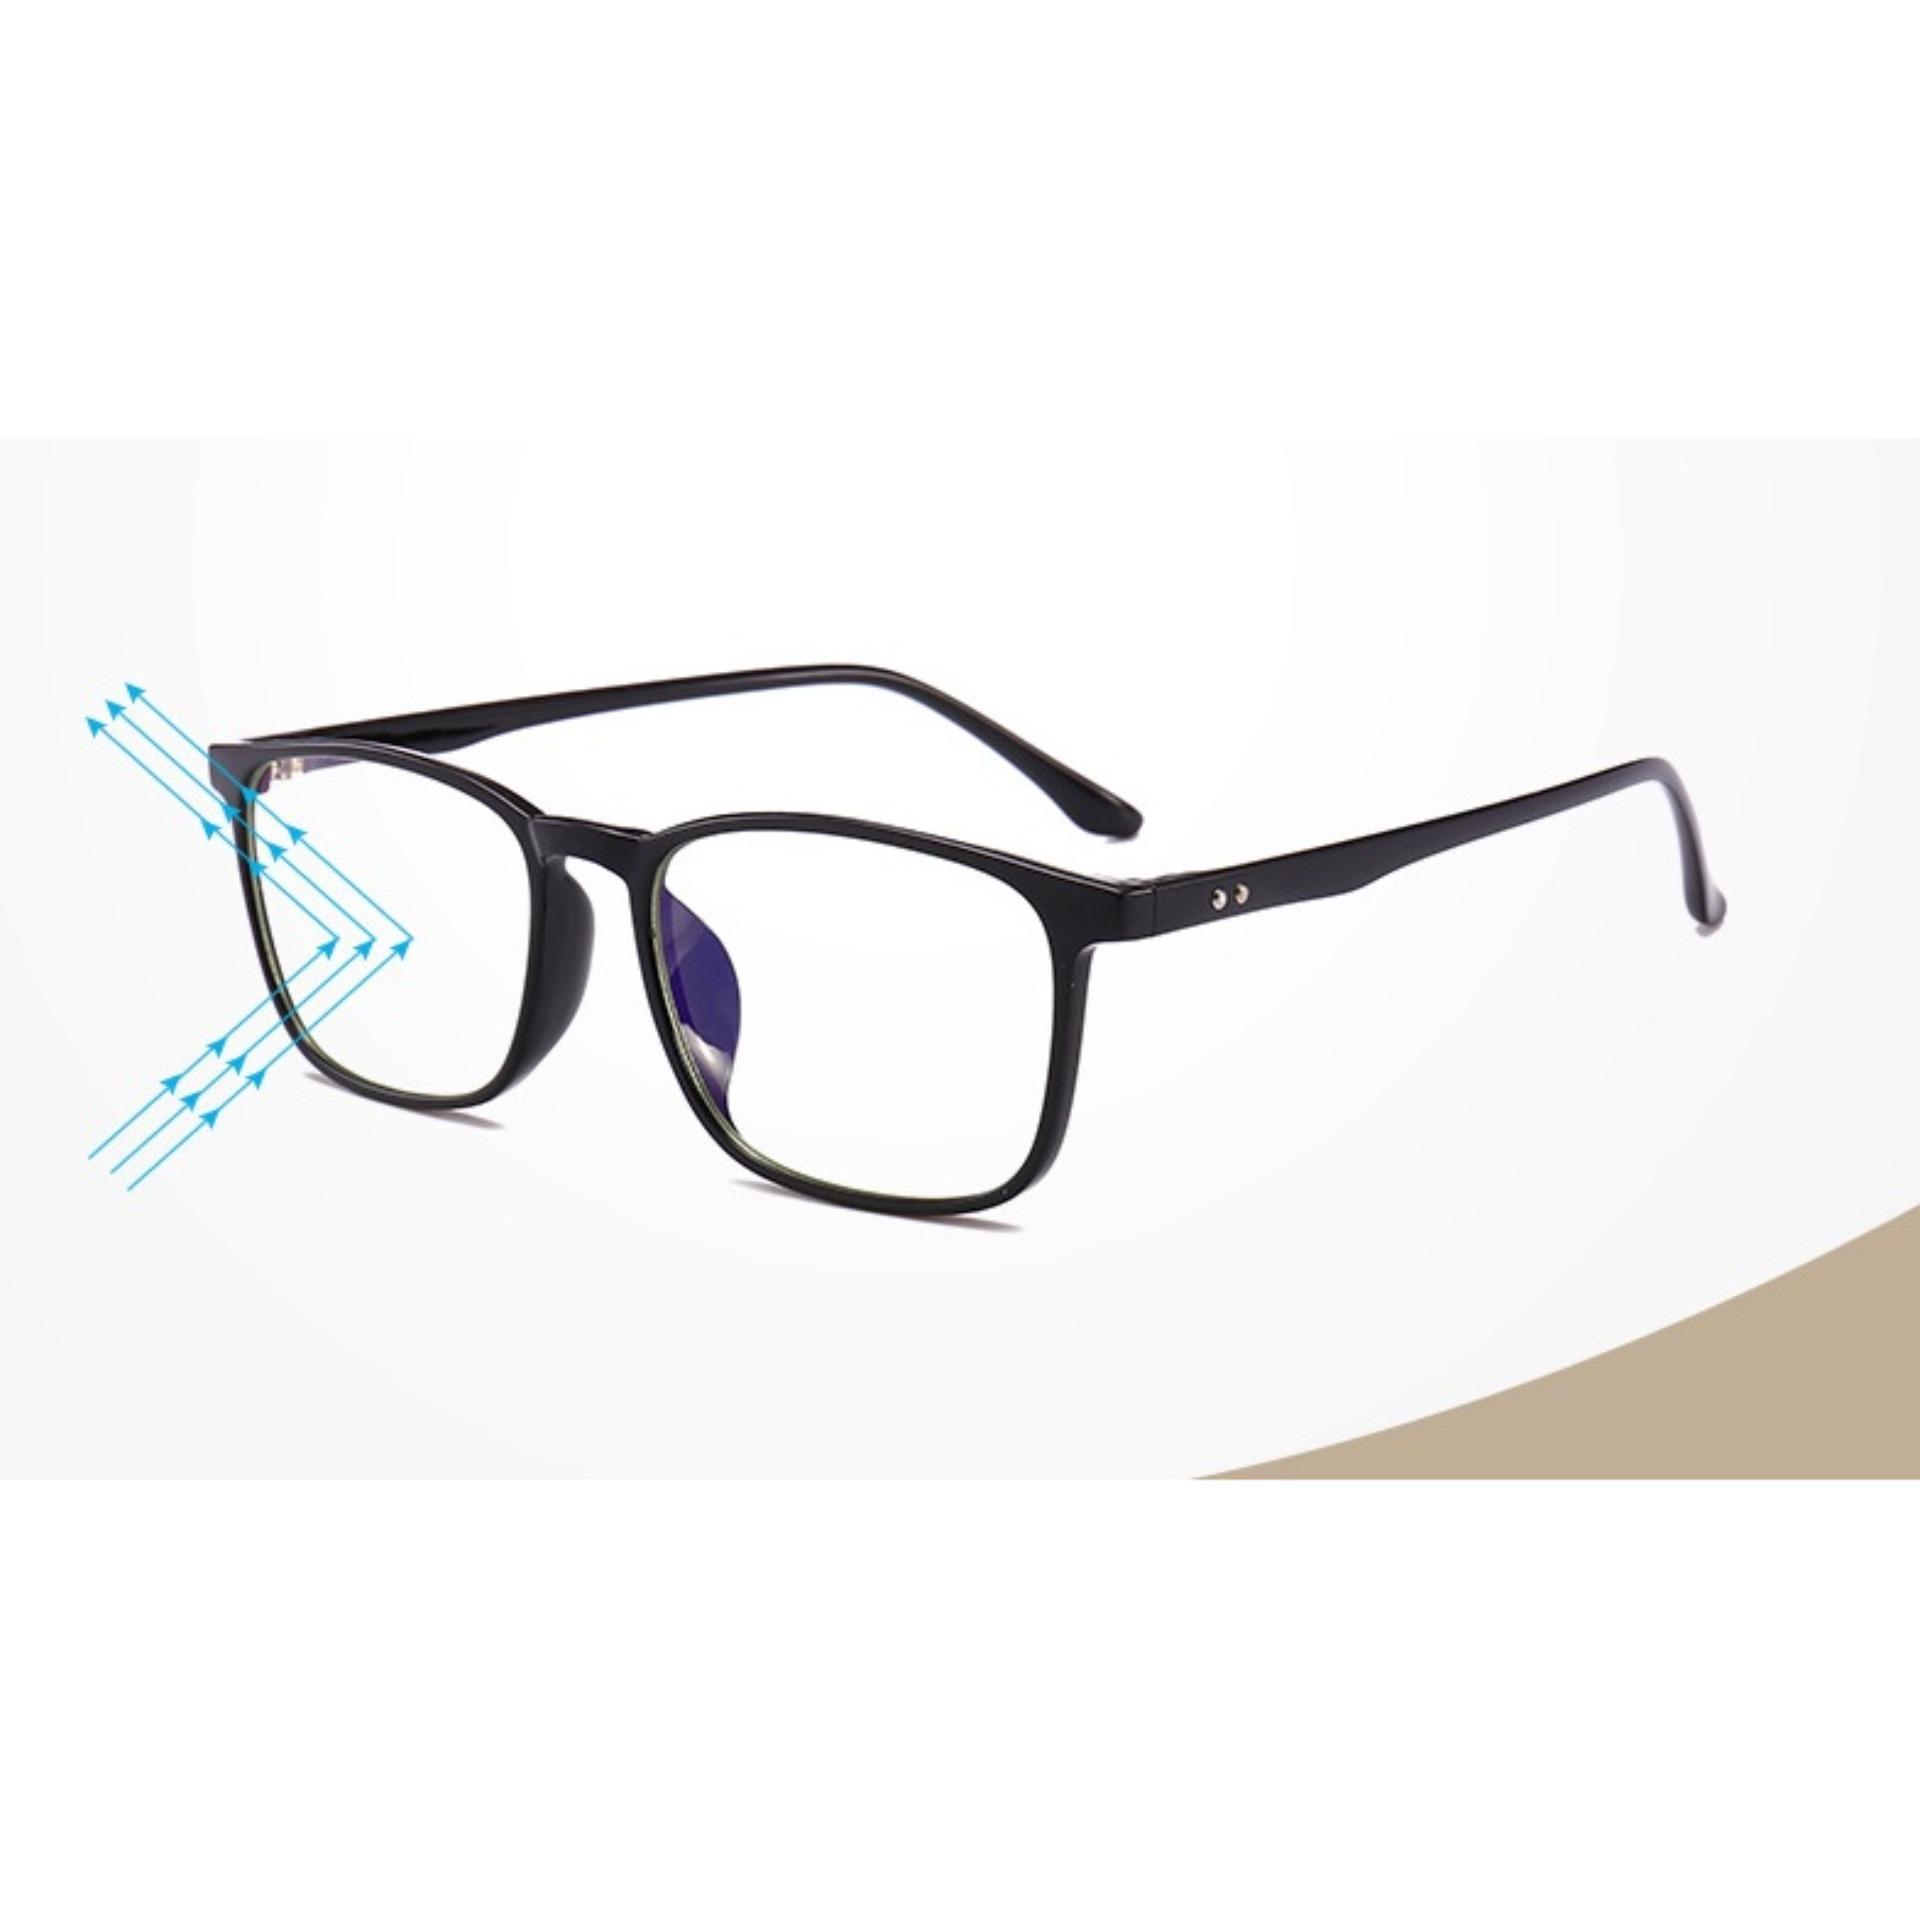 JK Silver - kính cận nam nữ chống ánh sáng xanh-Us Design K041811 gọng đen nhám cao cấp mẫu mới...